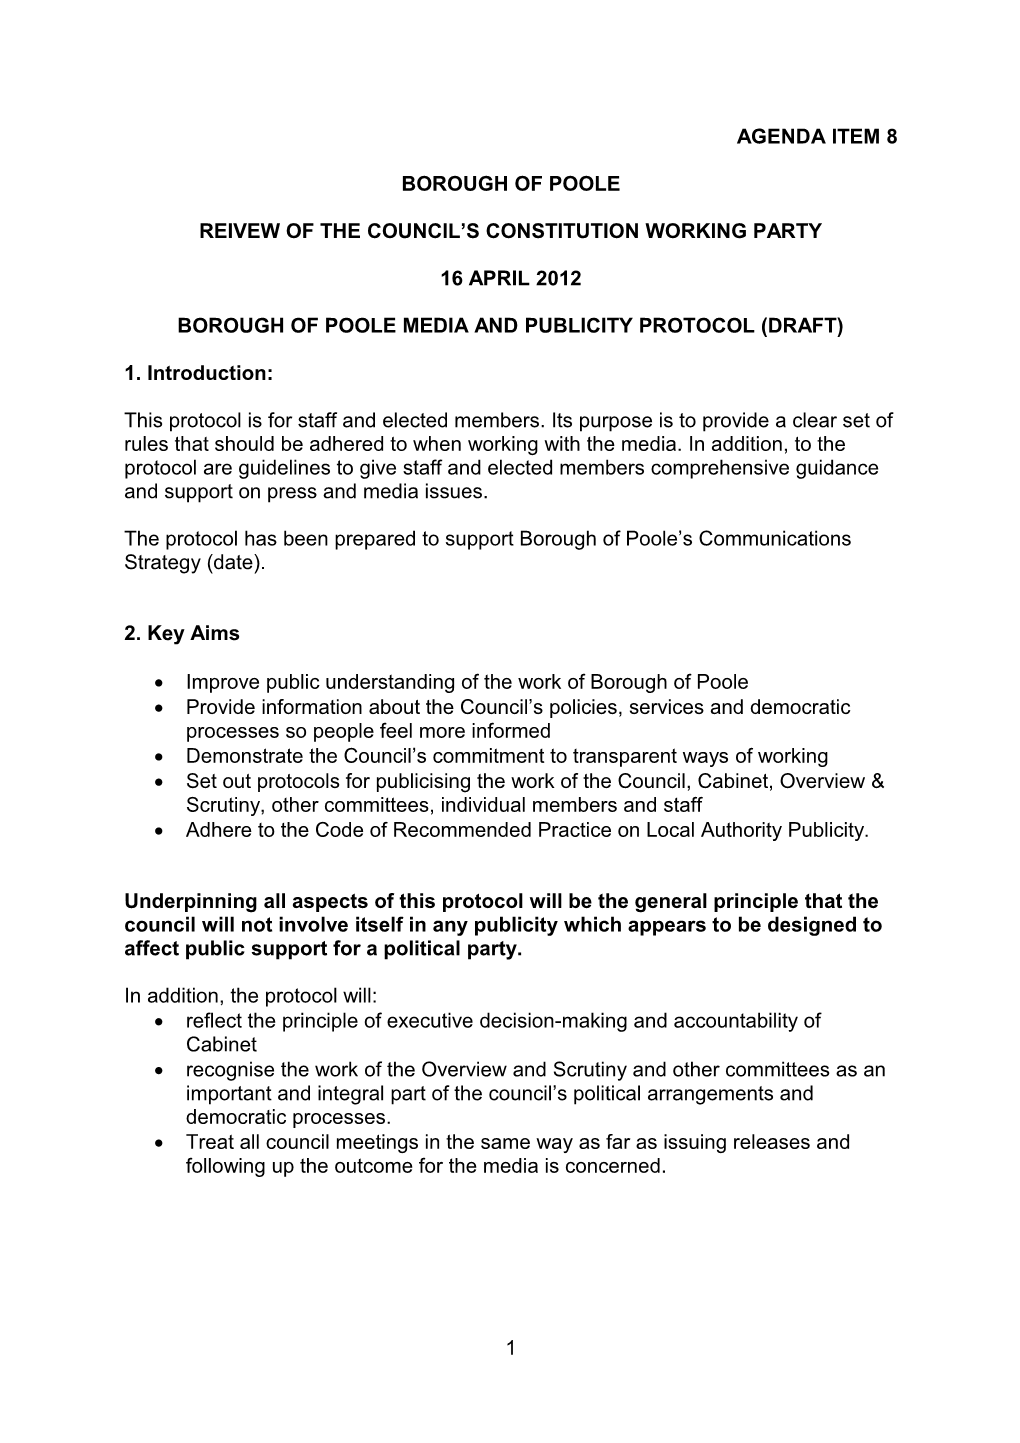 Borough of Poole Media Protocol (Draft)